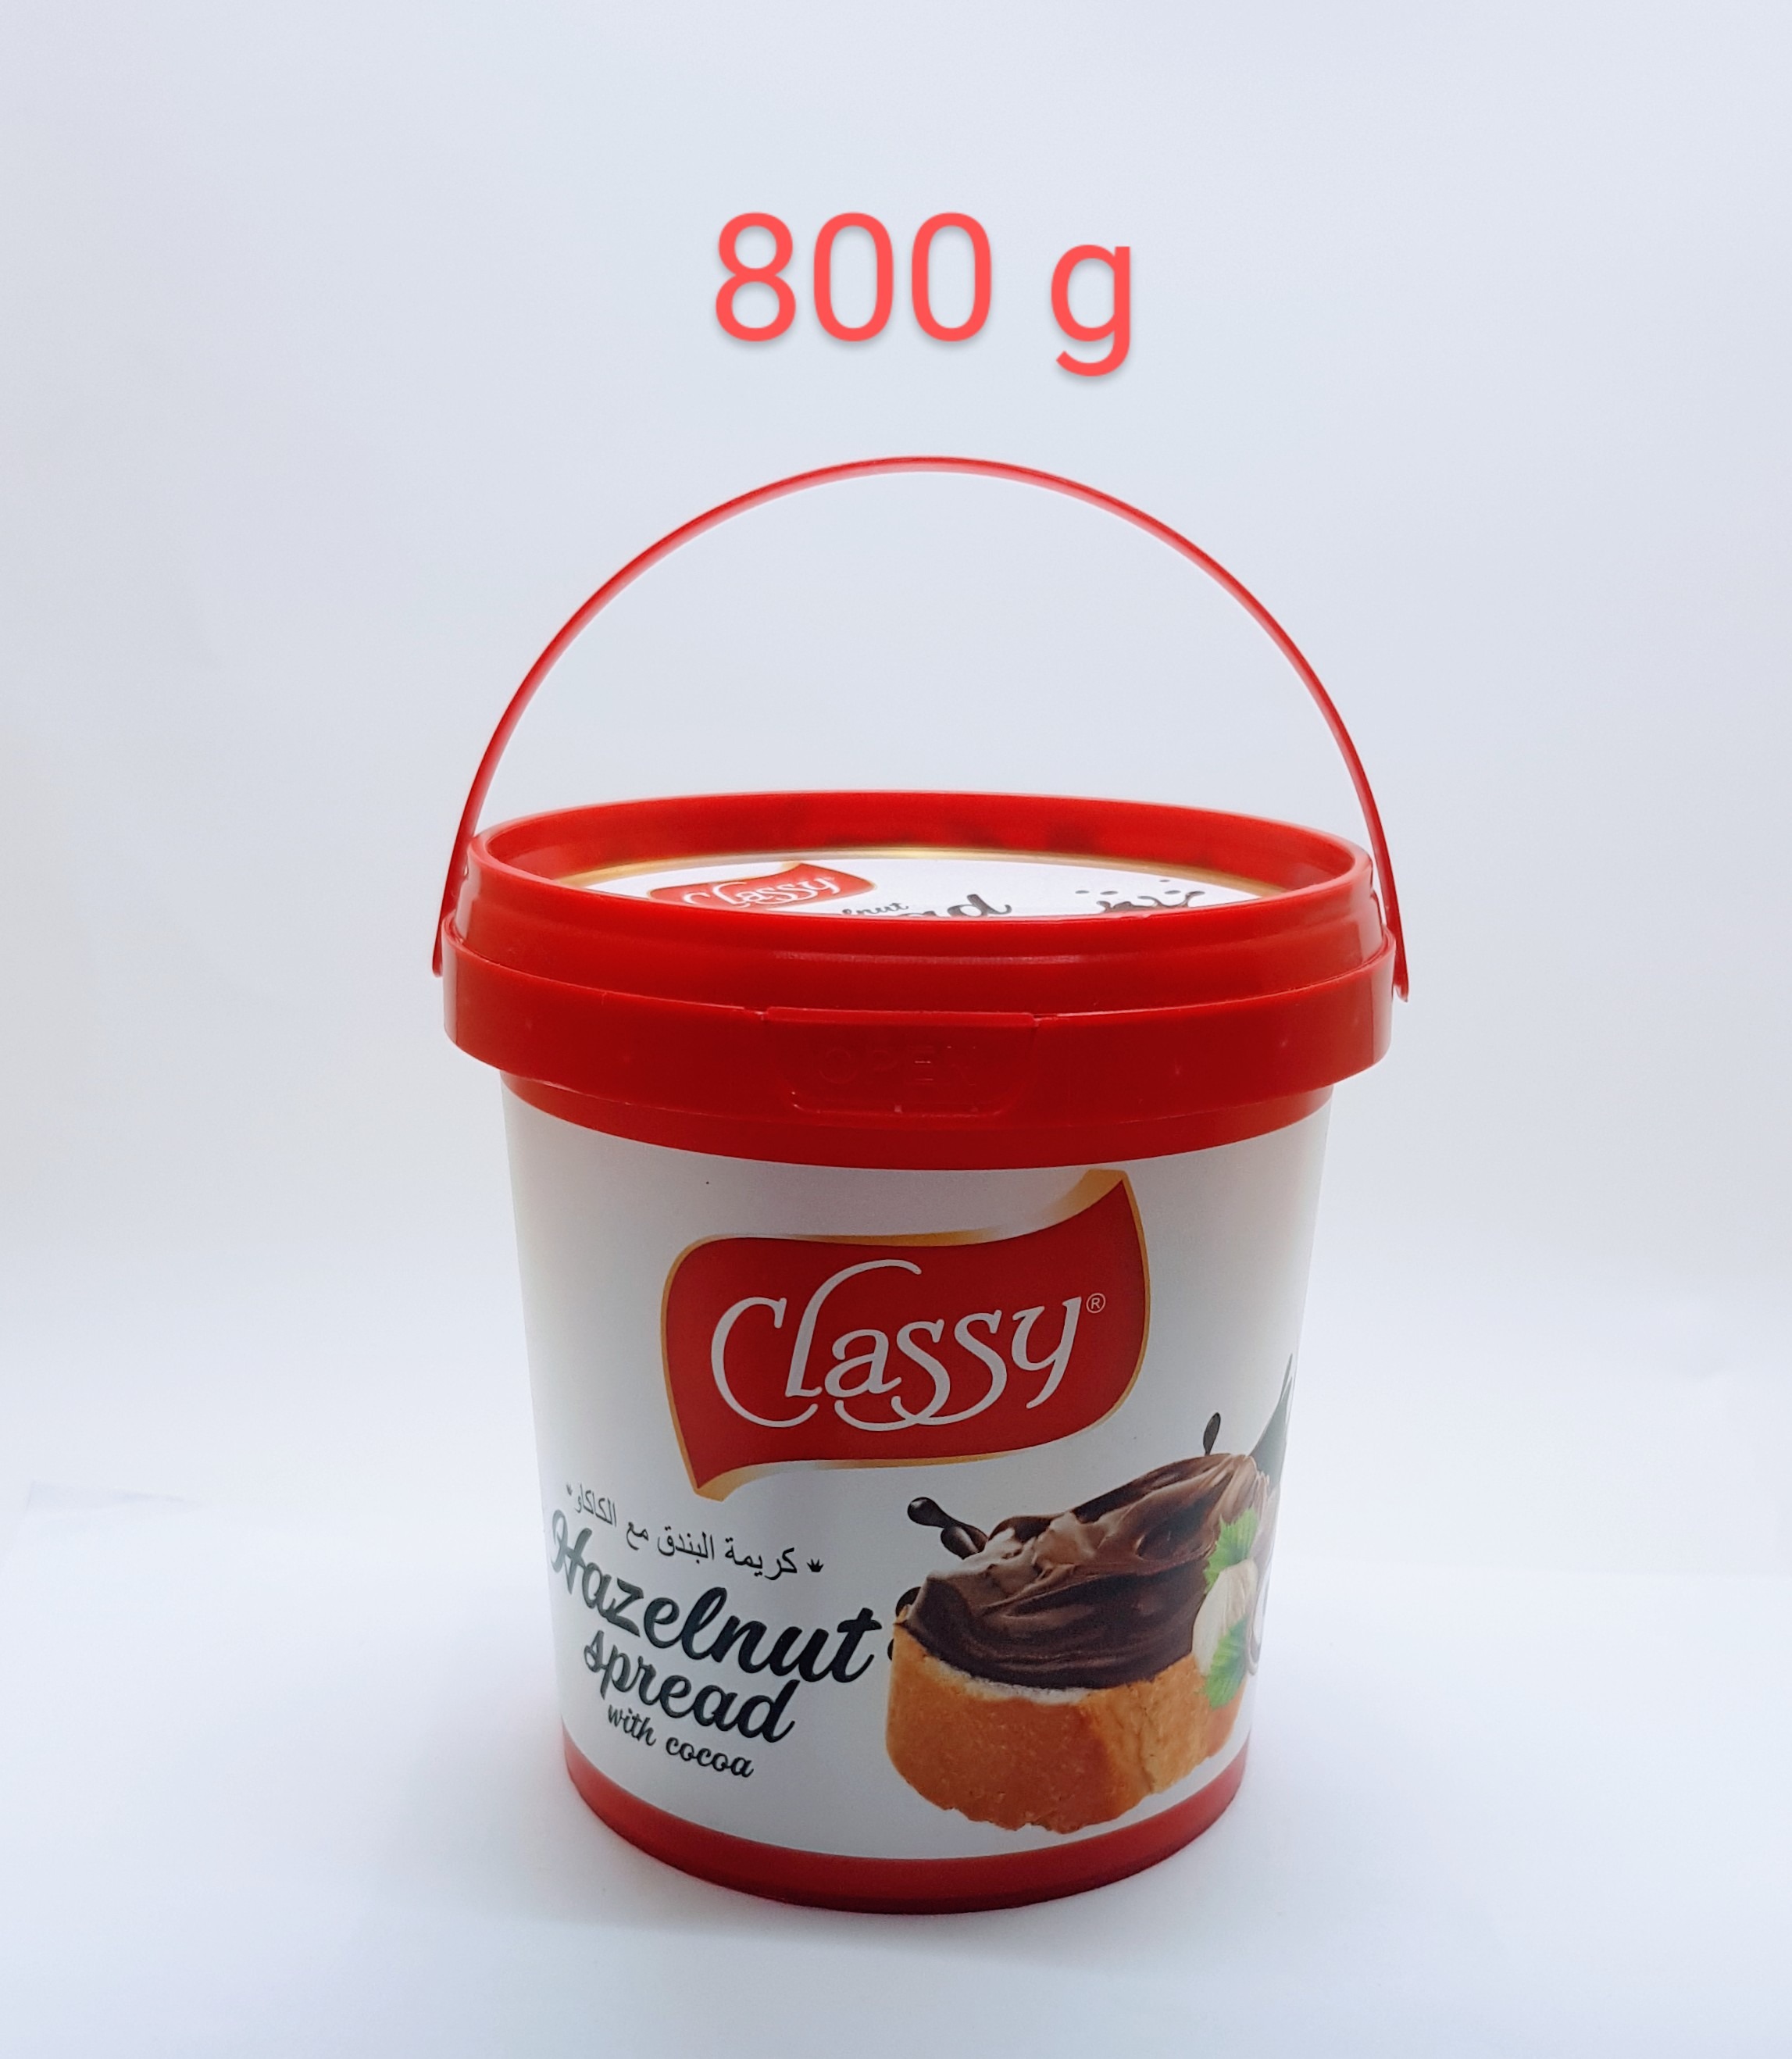 (Food) CLASSY Hazelnut Spread (800g) (Cargo)